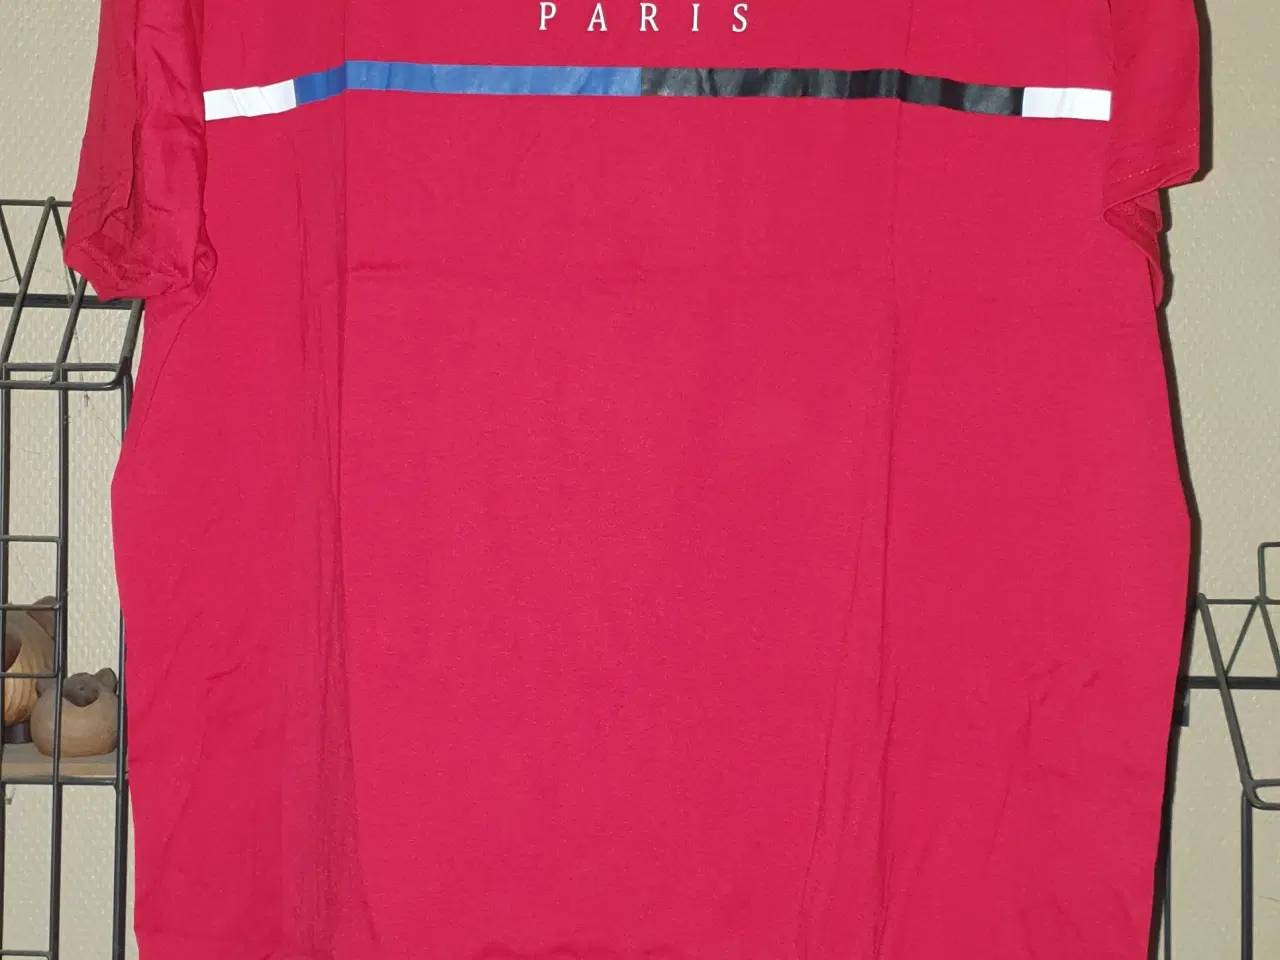 Billede 1 - Rød T-shirt med Paris tryk på brystet